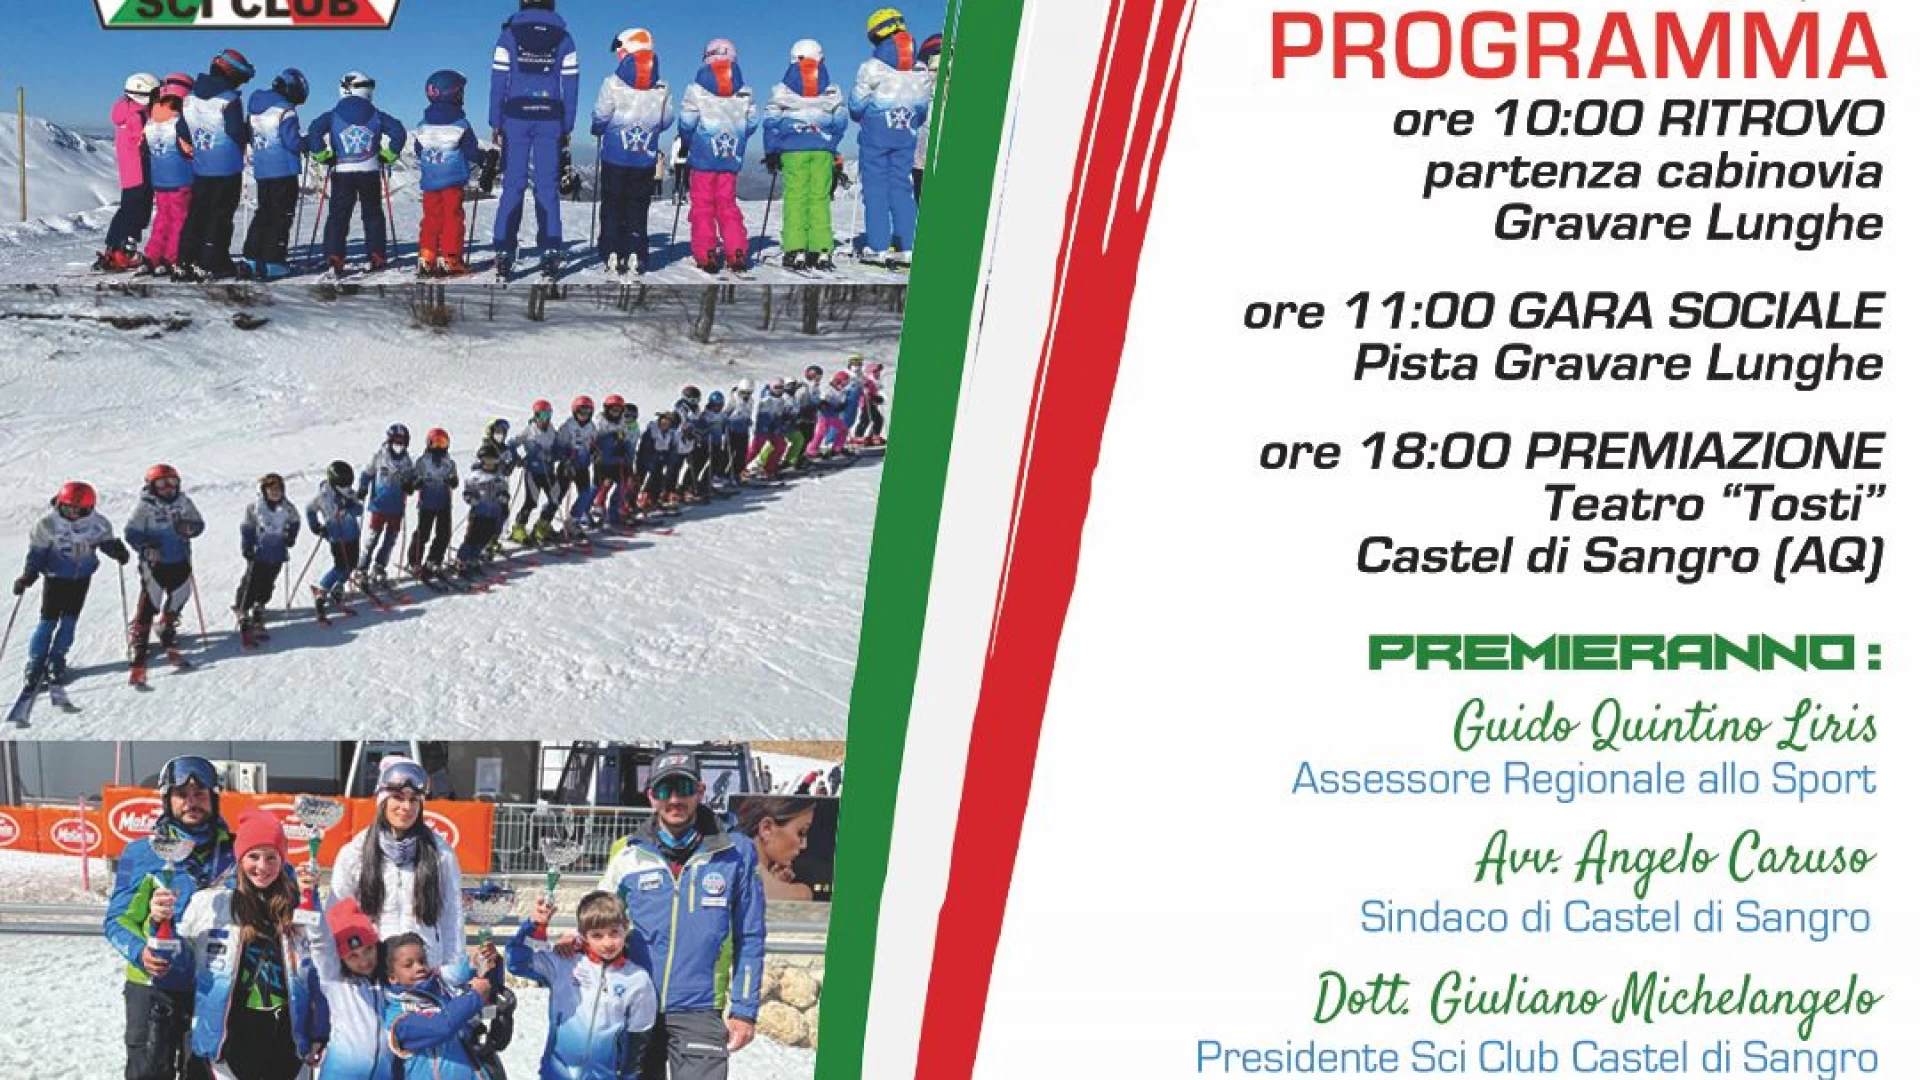 Sci Club Castel Di Sangro, sabato 2 aprile la gara sociale e la conclusione ufficiale della stagione sciistica 2021-22. Al Teatro Tosti le premiazioni.